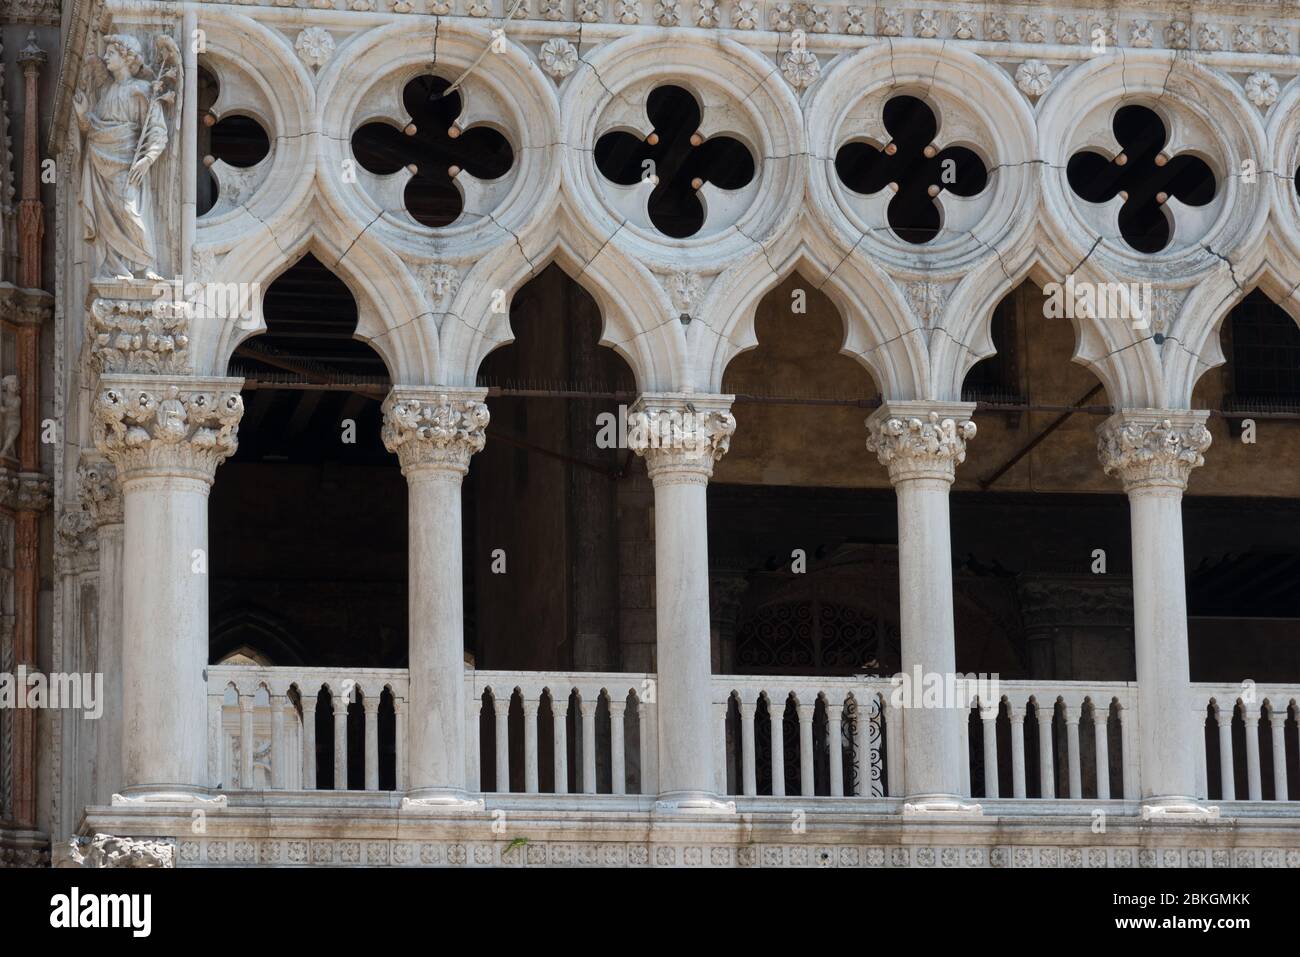 Parte della facciata del Palazzo Ducale di Venezia mostra durante il giorno la dettagliata architettura gotica Foto Stock